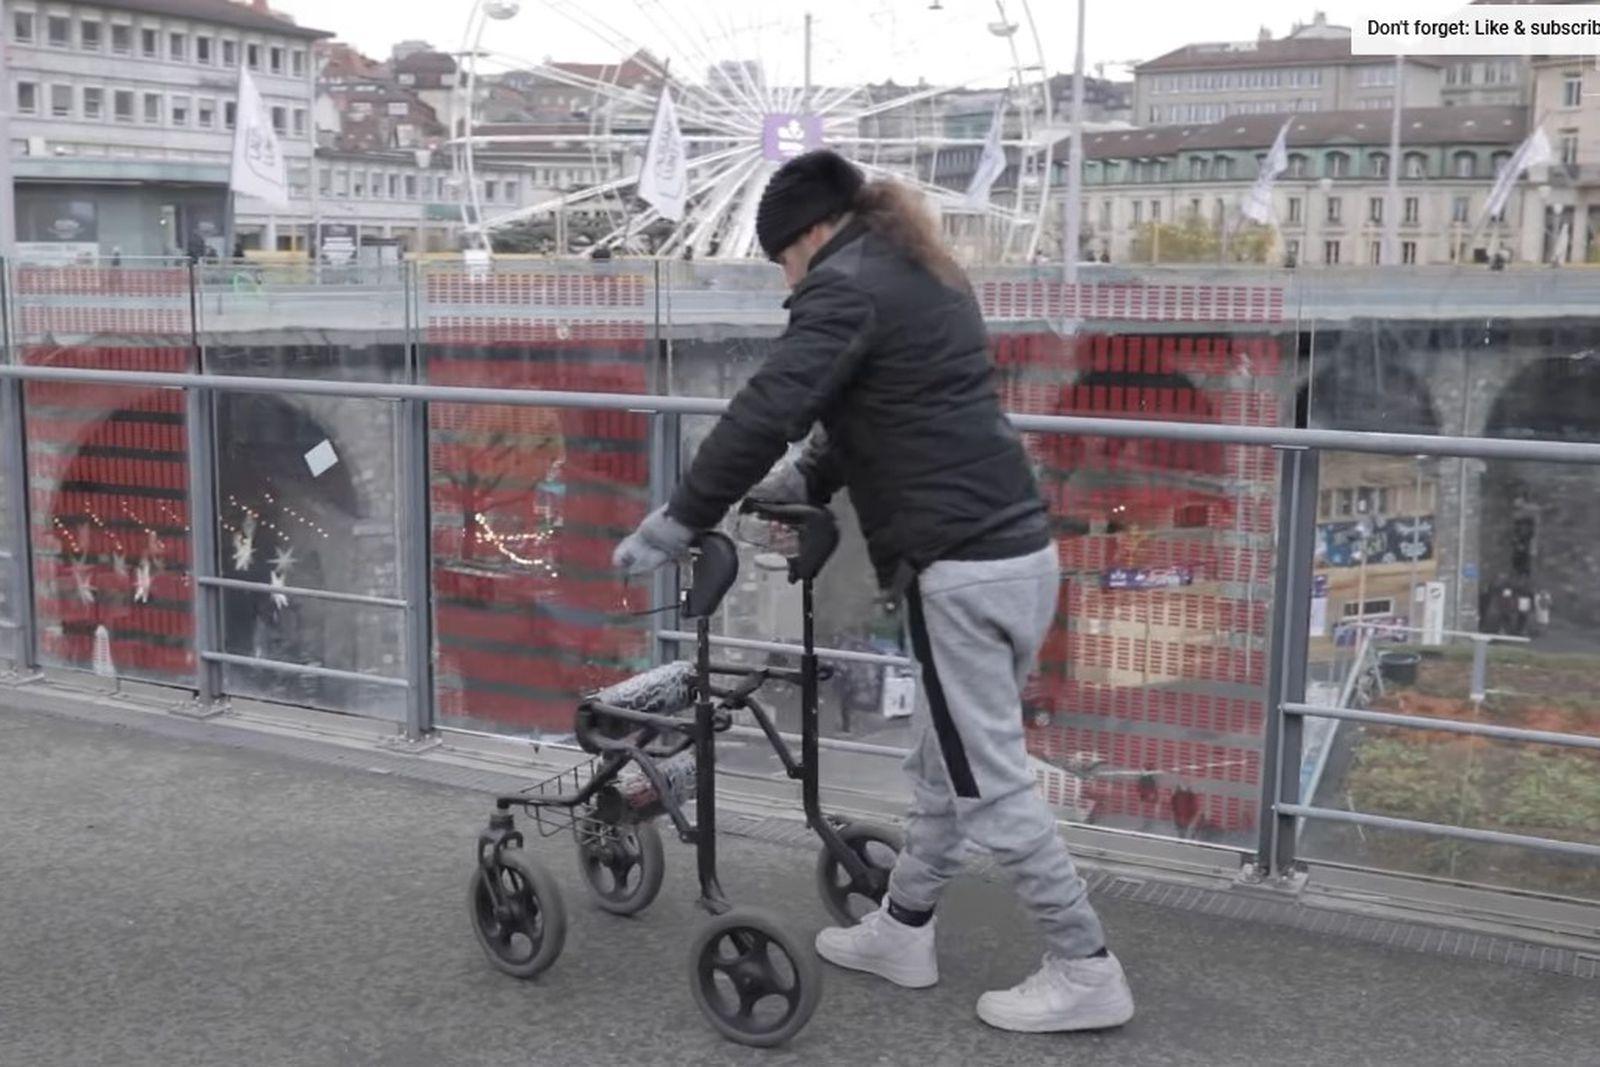 Paralizirani muškarac ponovo hoda zahvaljujući električnom implantatu ugrađenom u kičmu